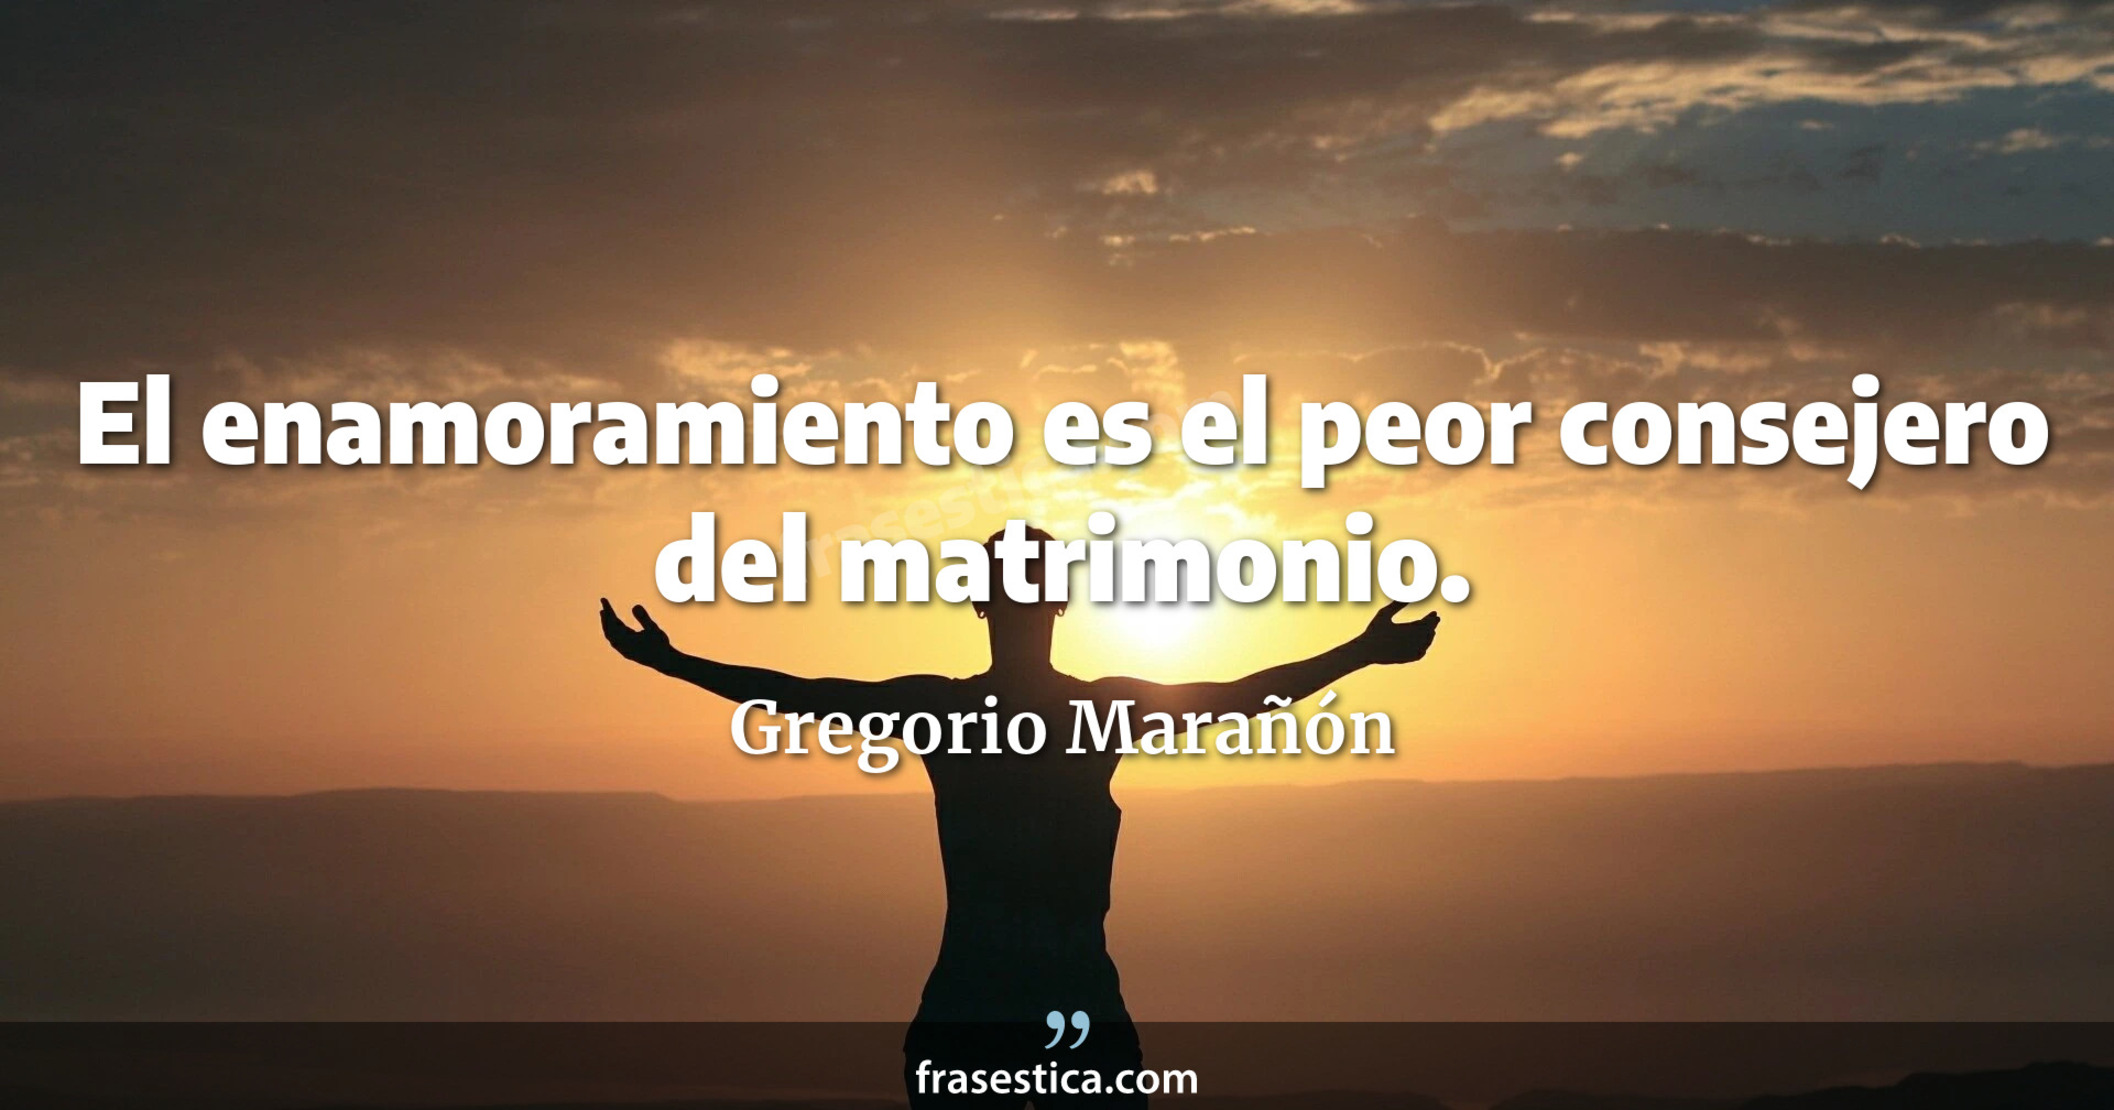 El enamoramiento es el peor consejero del matrimonio. - Gregorio Marañón